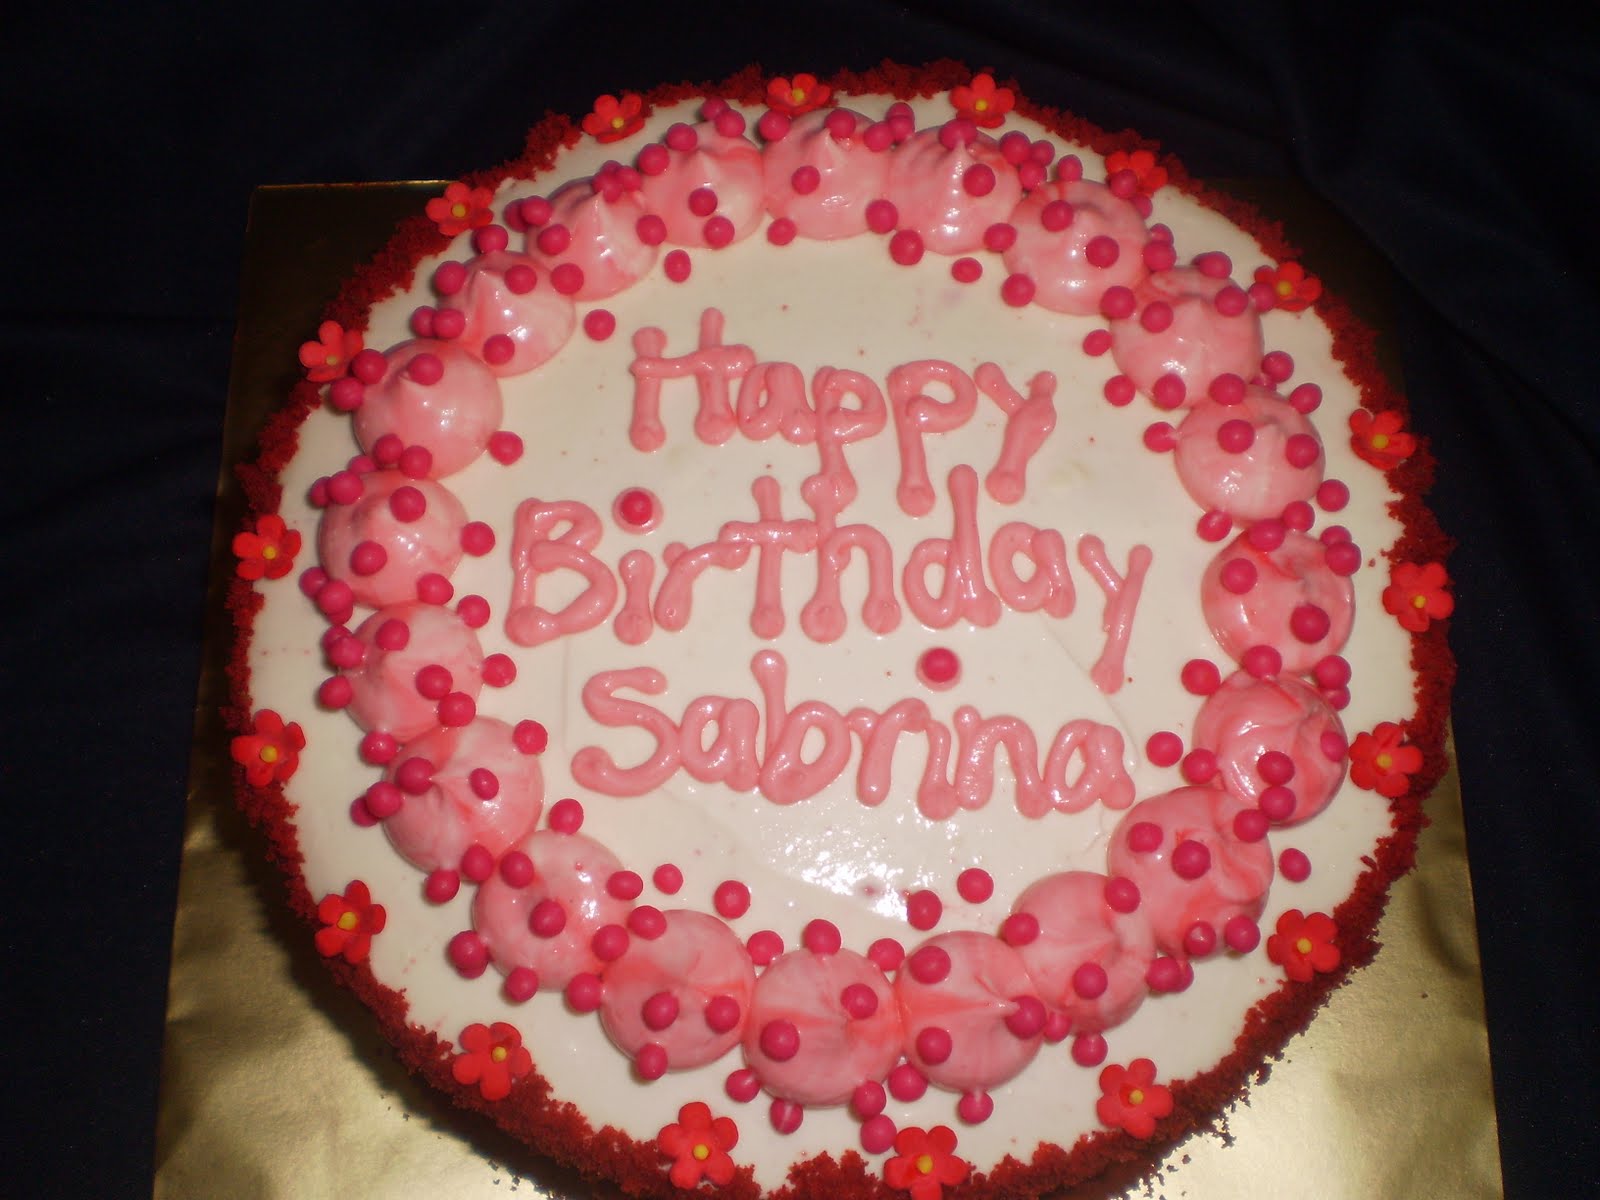 Birthday Cake - Red Velvet - Happy Birthday Sabrina.